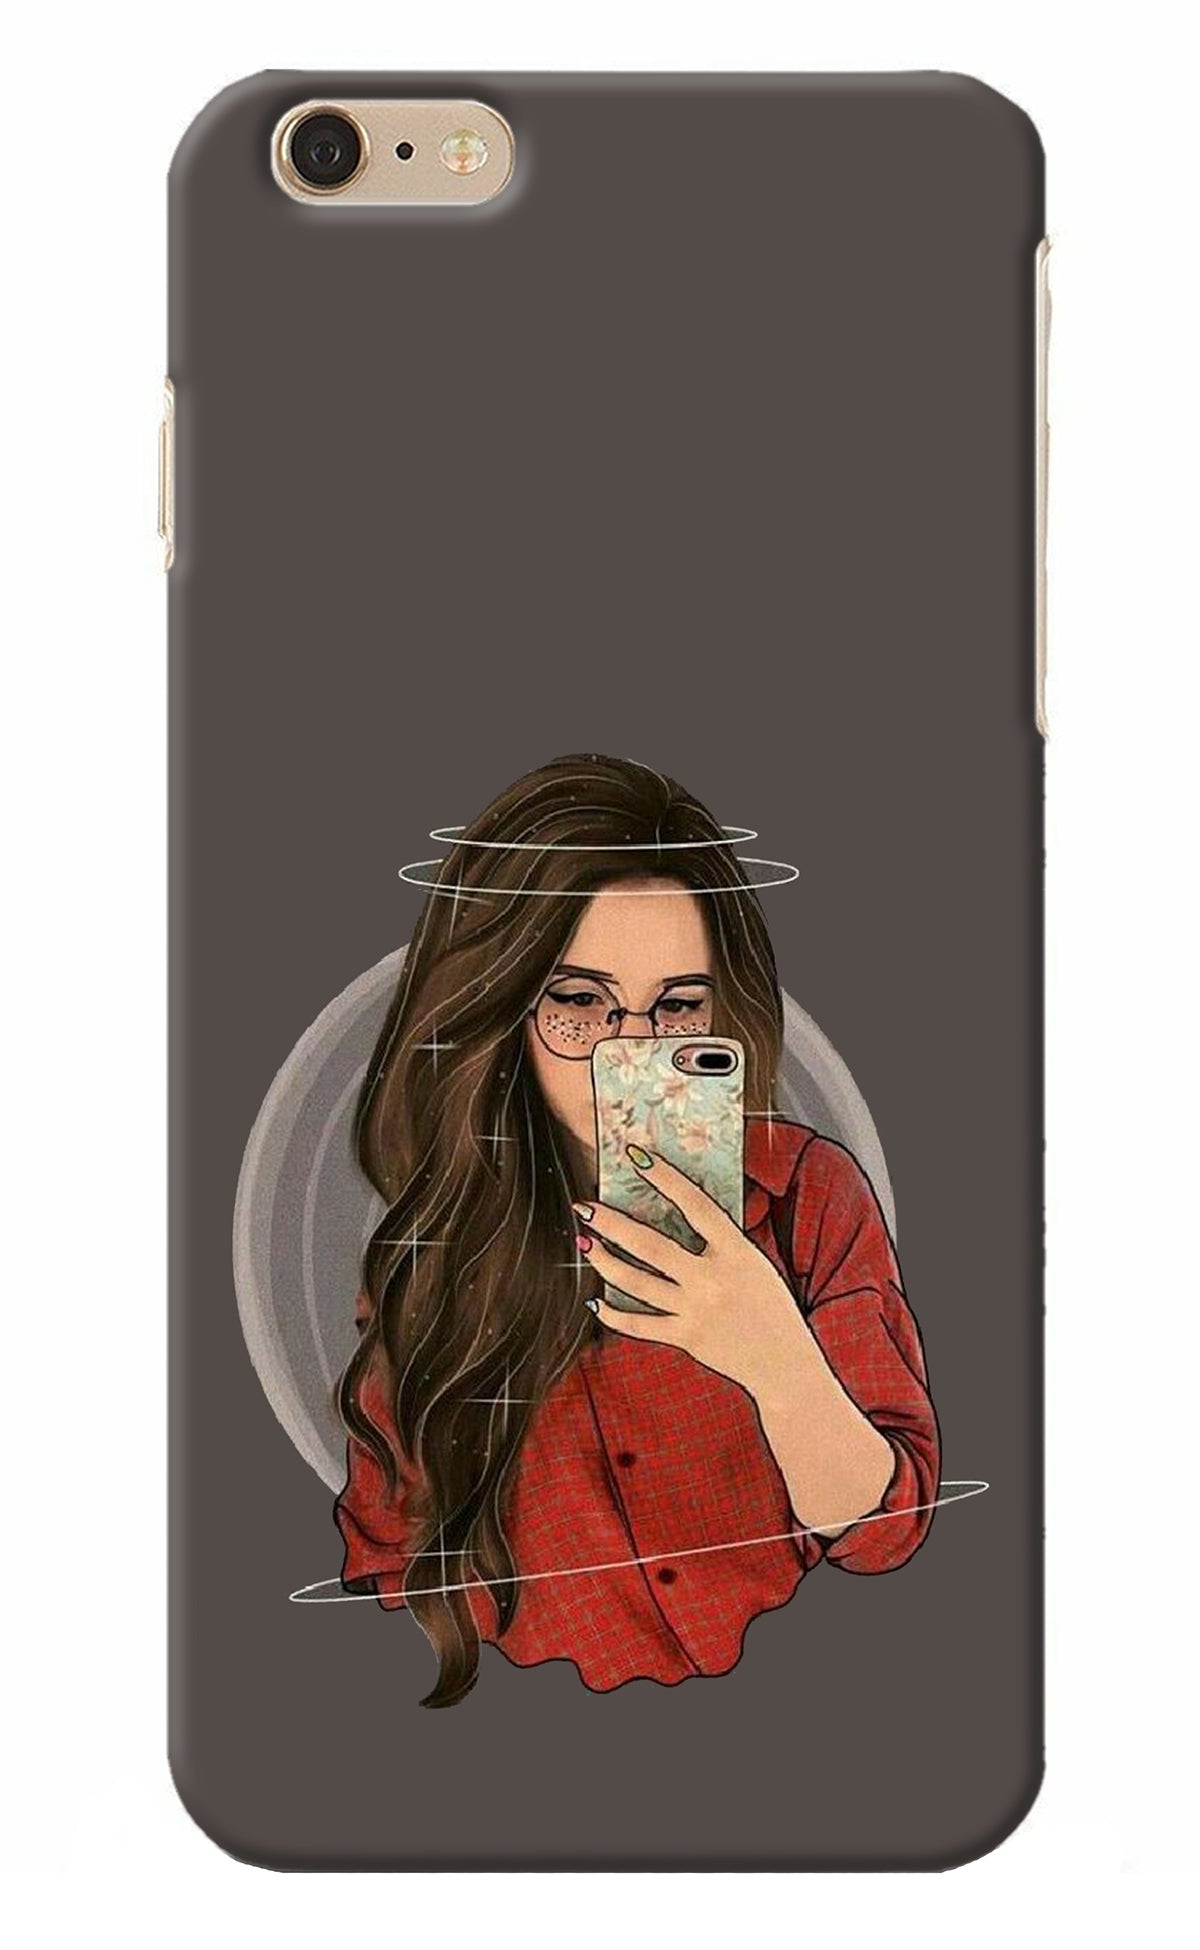 Selfie Queen iPhone 6 Plus/6s Plus Back Cover